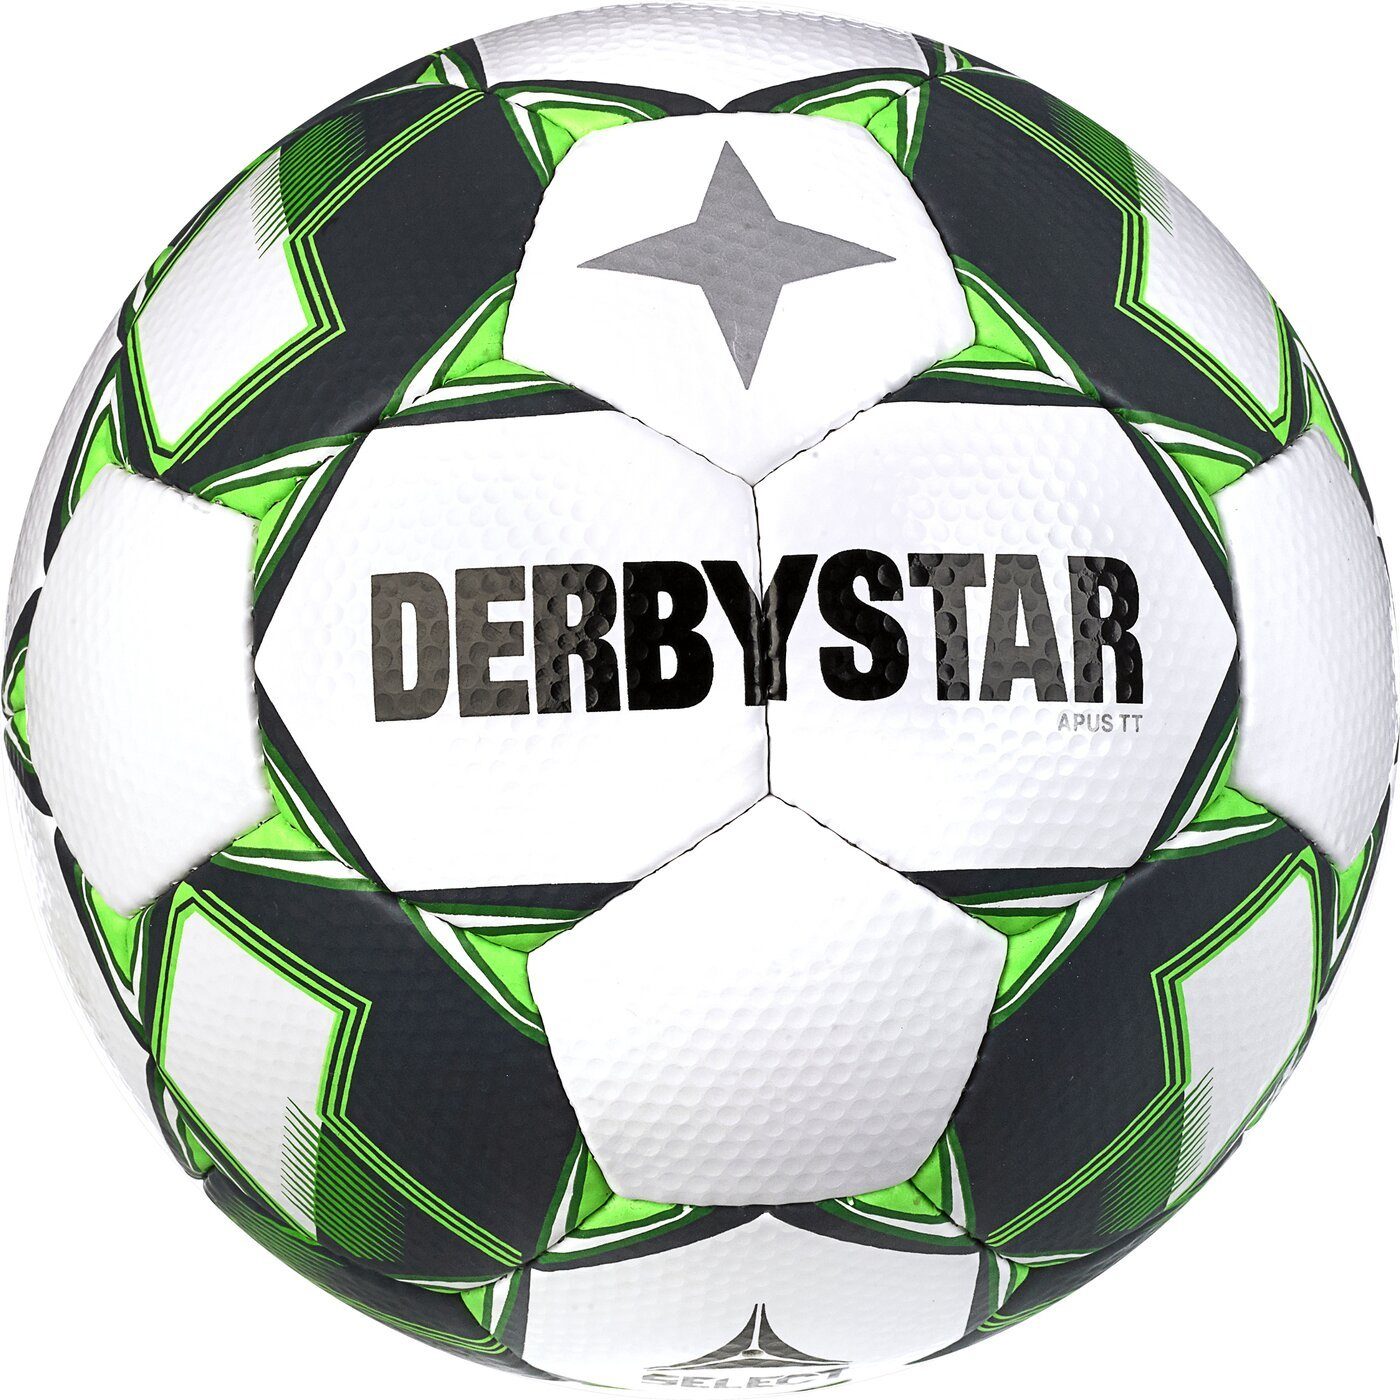 Derbystar Fußball Apus TT v23 WEISS GRÜN